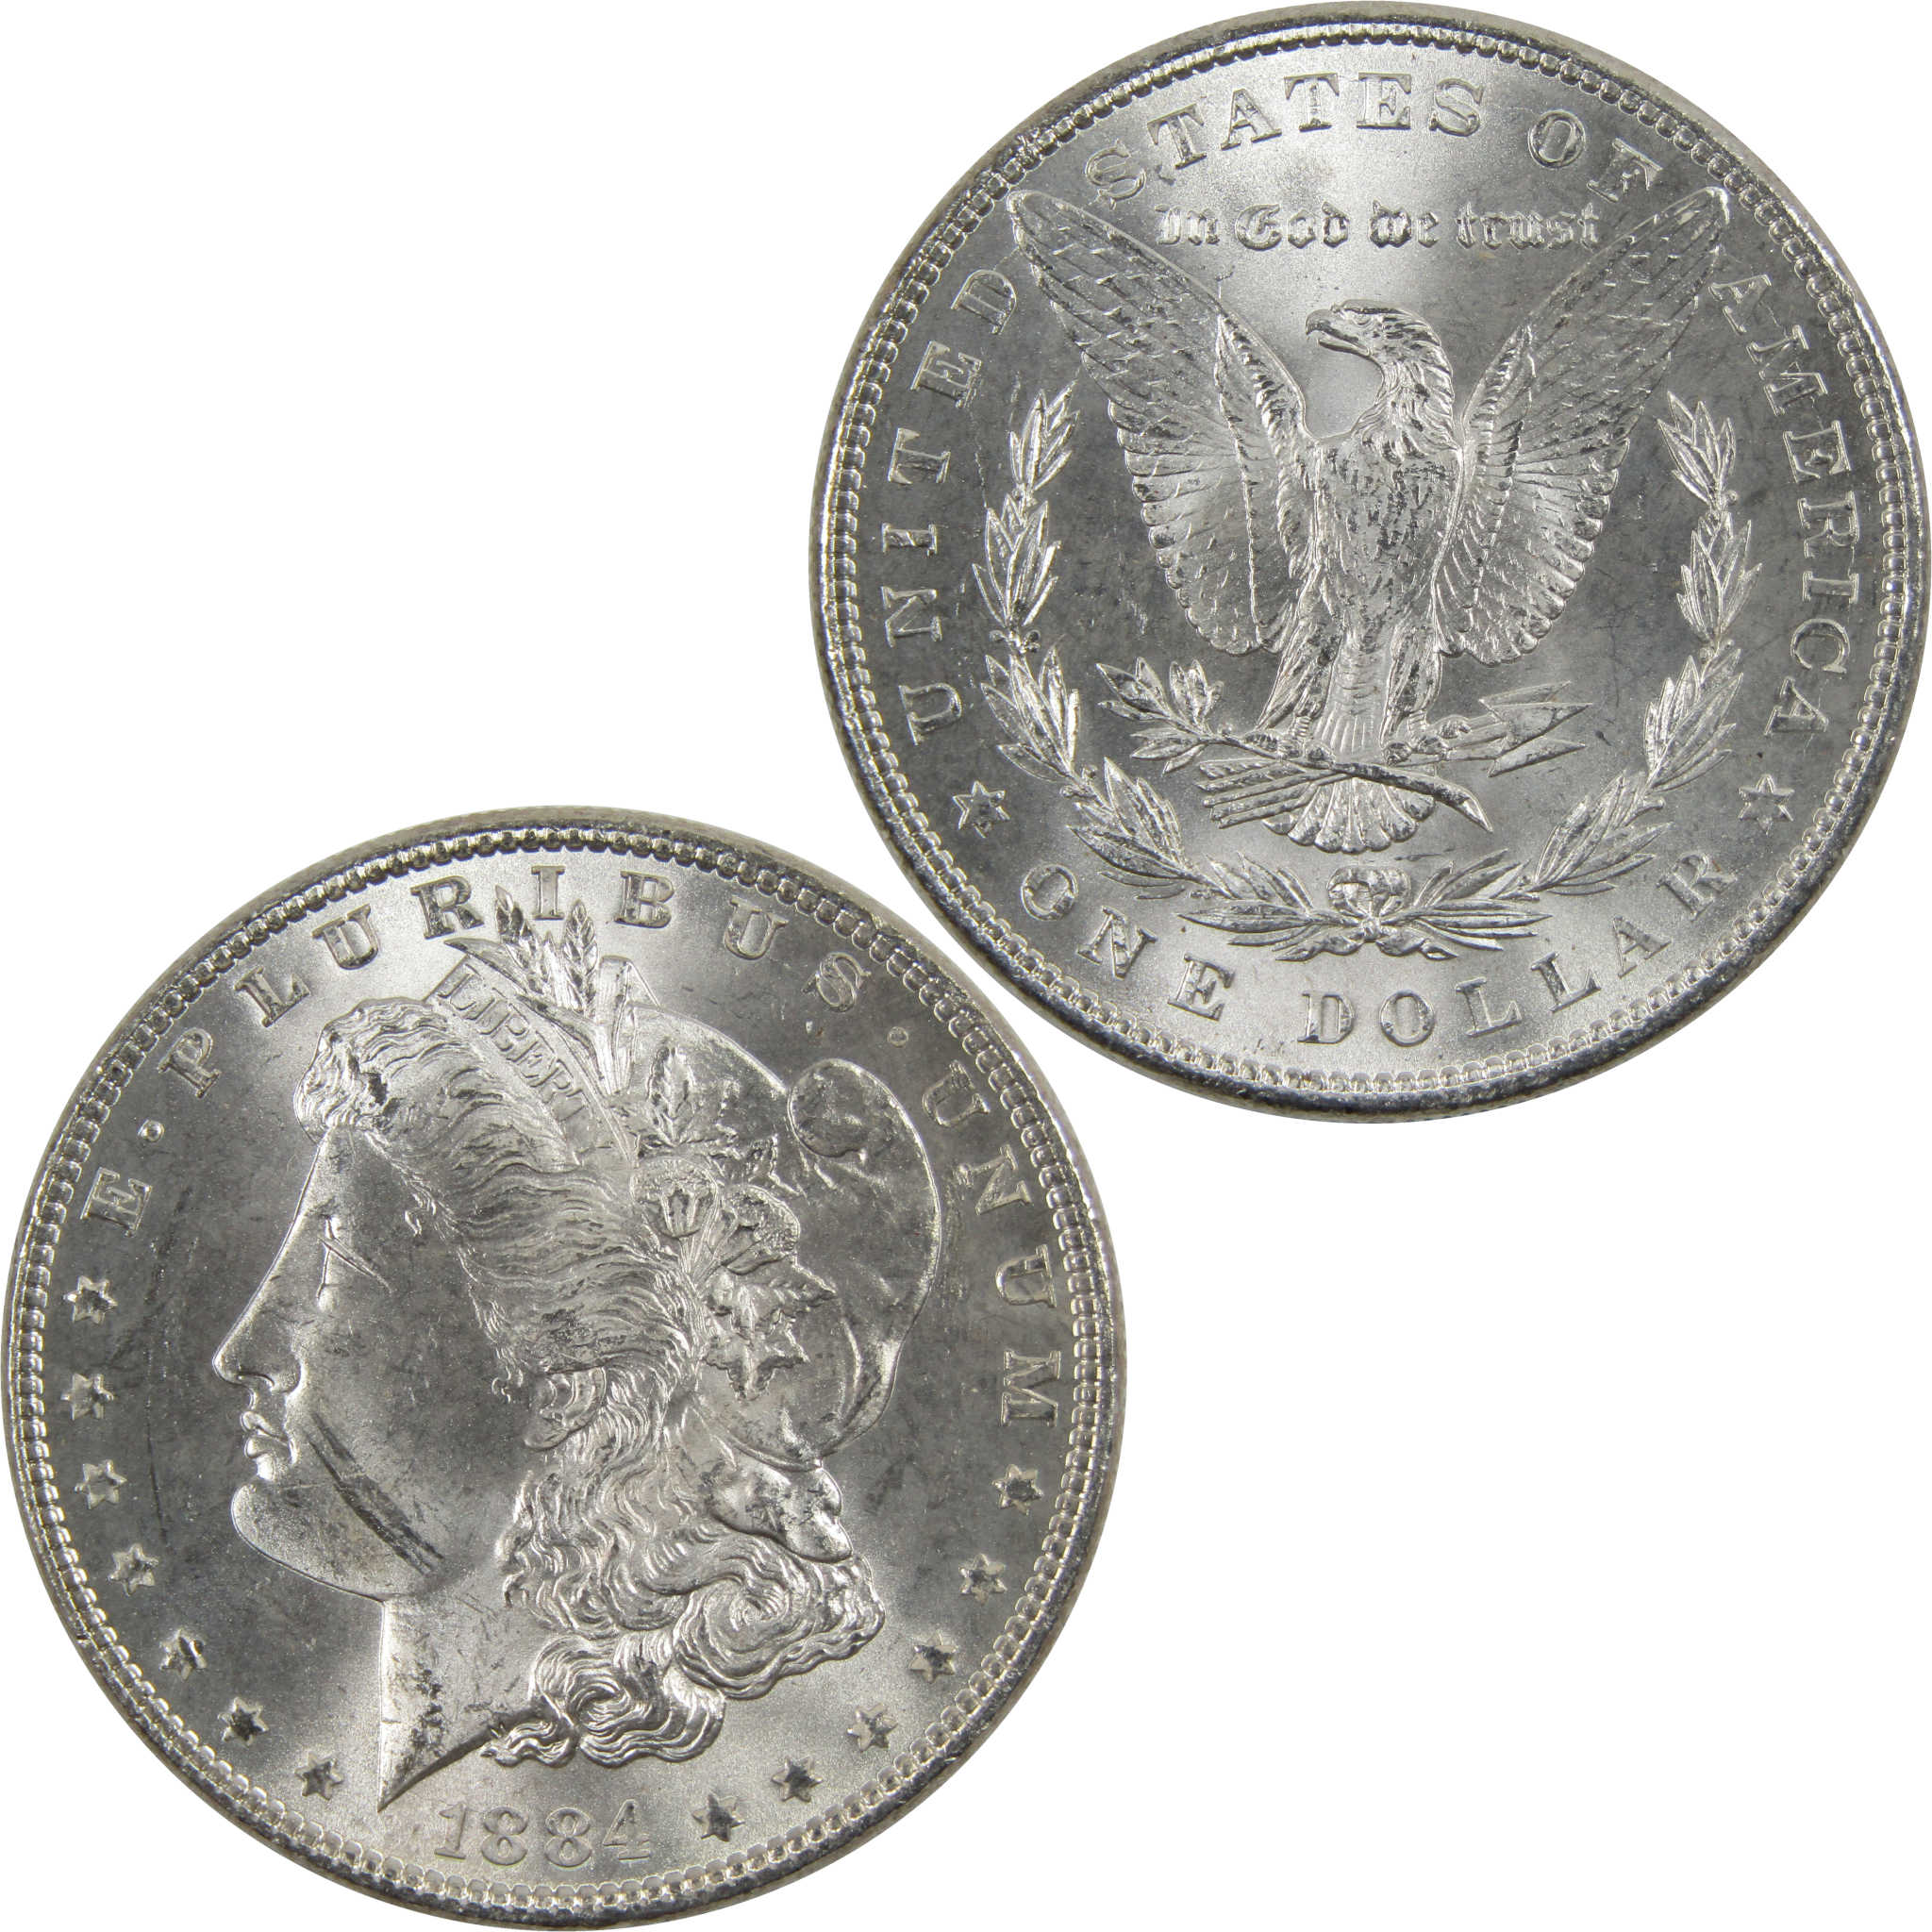 1884 Morgan Dollar BU Uncirculated 90% Silver $1 Coin SKU:I6013 - Morgan coin - Morgan silver dollar - Morgan silver dollar for sale - Profile Coins &amp; Collectibles